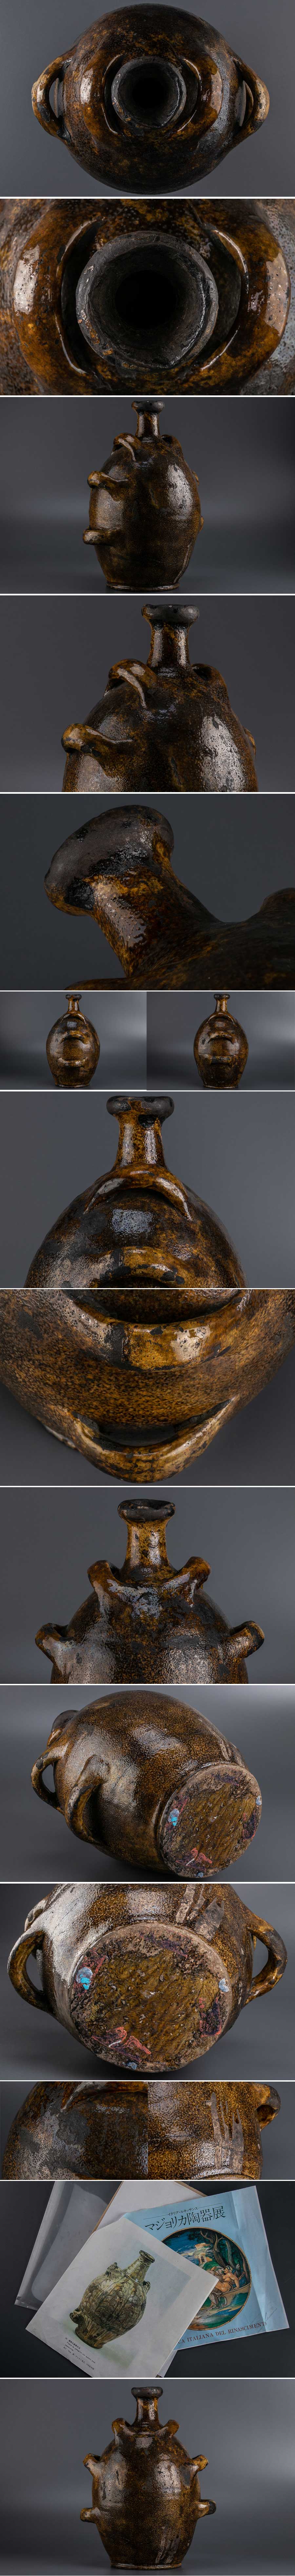 大特価特価『 西洋古陶器 茶釉手付水注 8864 』 発掘品 考古学 古美術 オブジェ インテリア 西洋美術 花瓶 リビング キャラリー 1700年以前